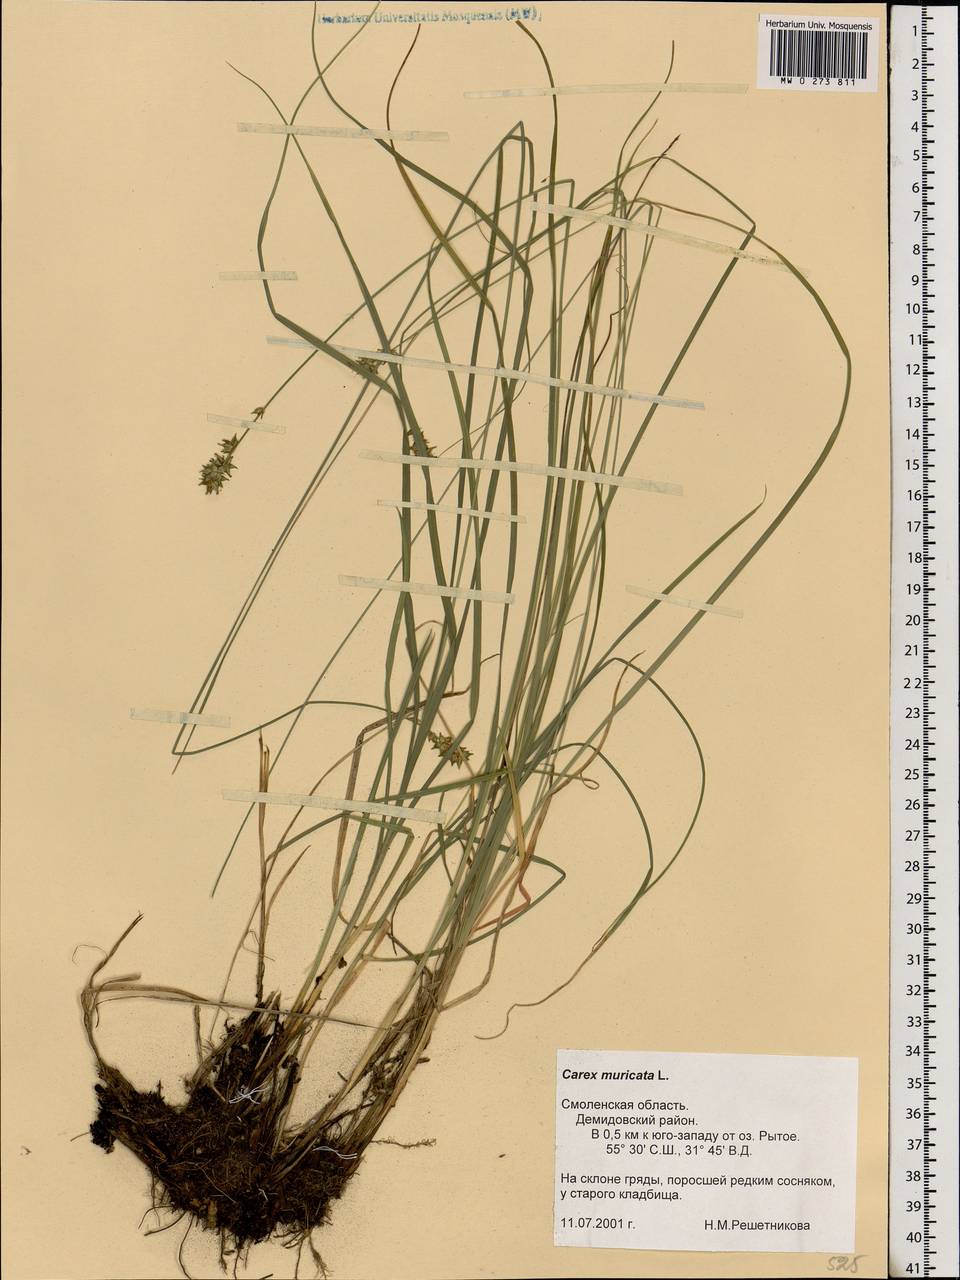 Carex muricata L., Eastern Europe, Western region (E3) (Russia)